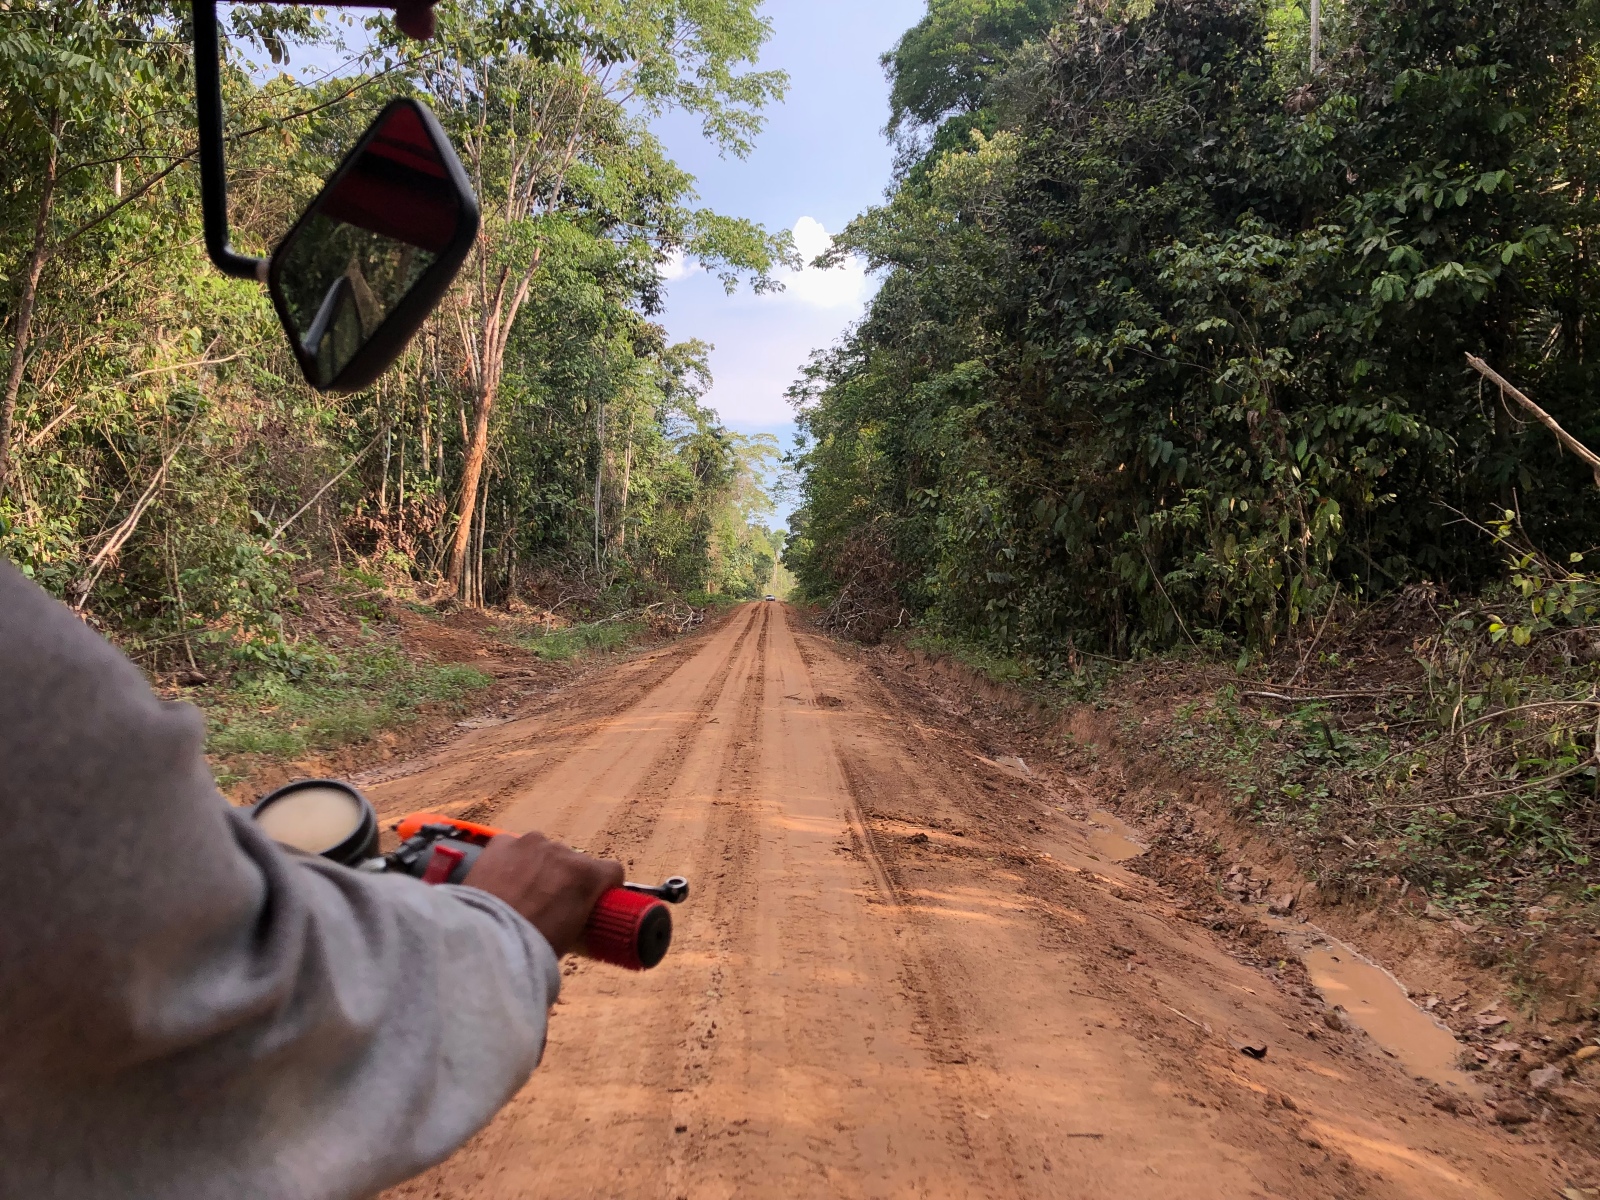 A motorbike navigating a dirt road near Caimito in Peru.